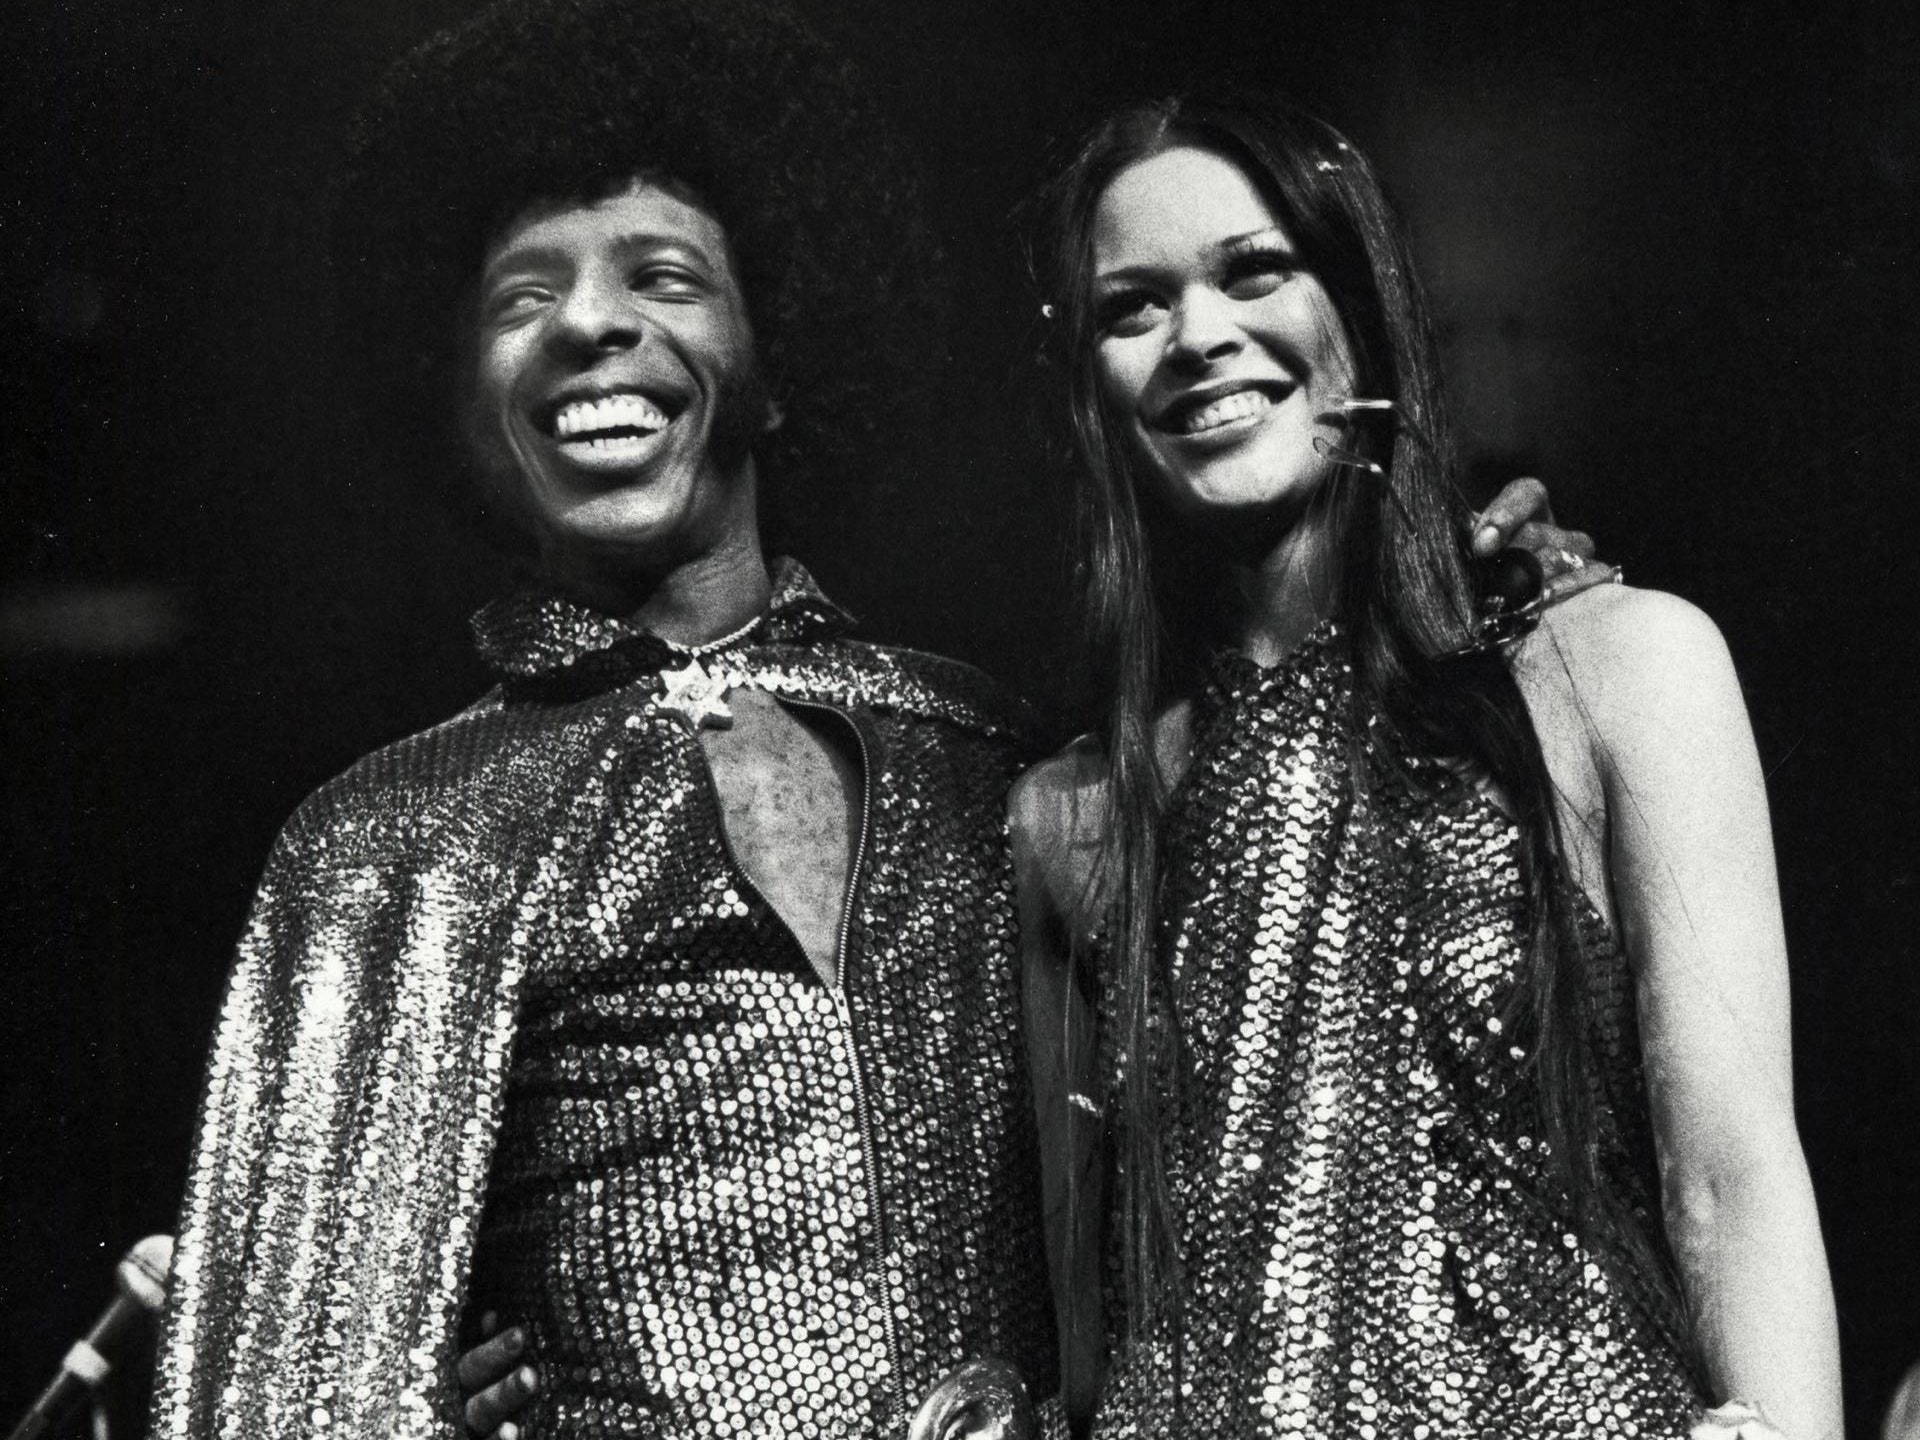 Slyy The Family Stone Son Reconocidos Por Su Música Funk Revolucionaria En Los Años 70. Kathy Y Sly Son Nombres De Personas Relacionadas Con La Banda. Fondo de pantalla